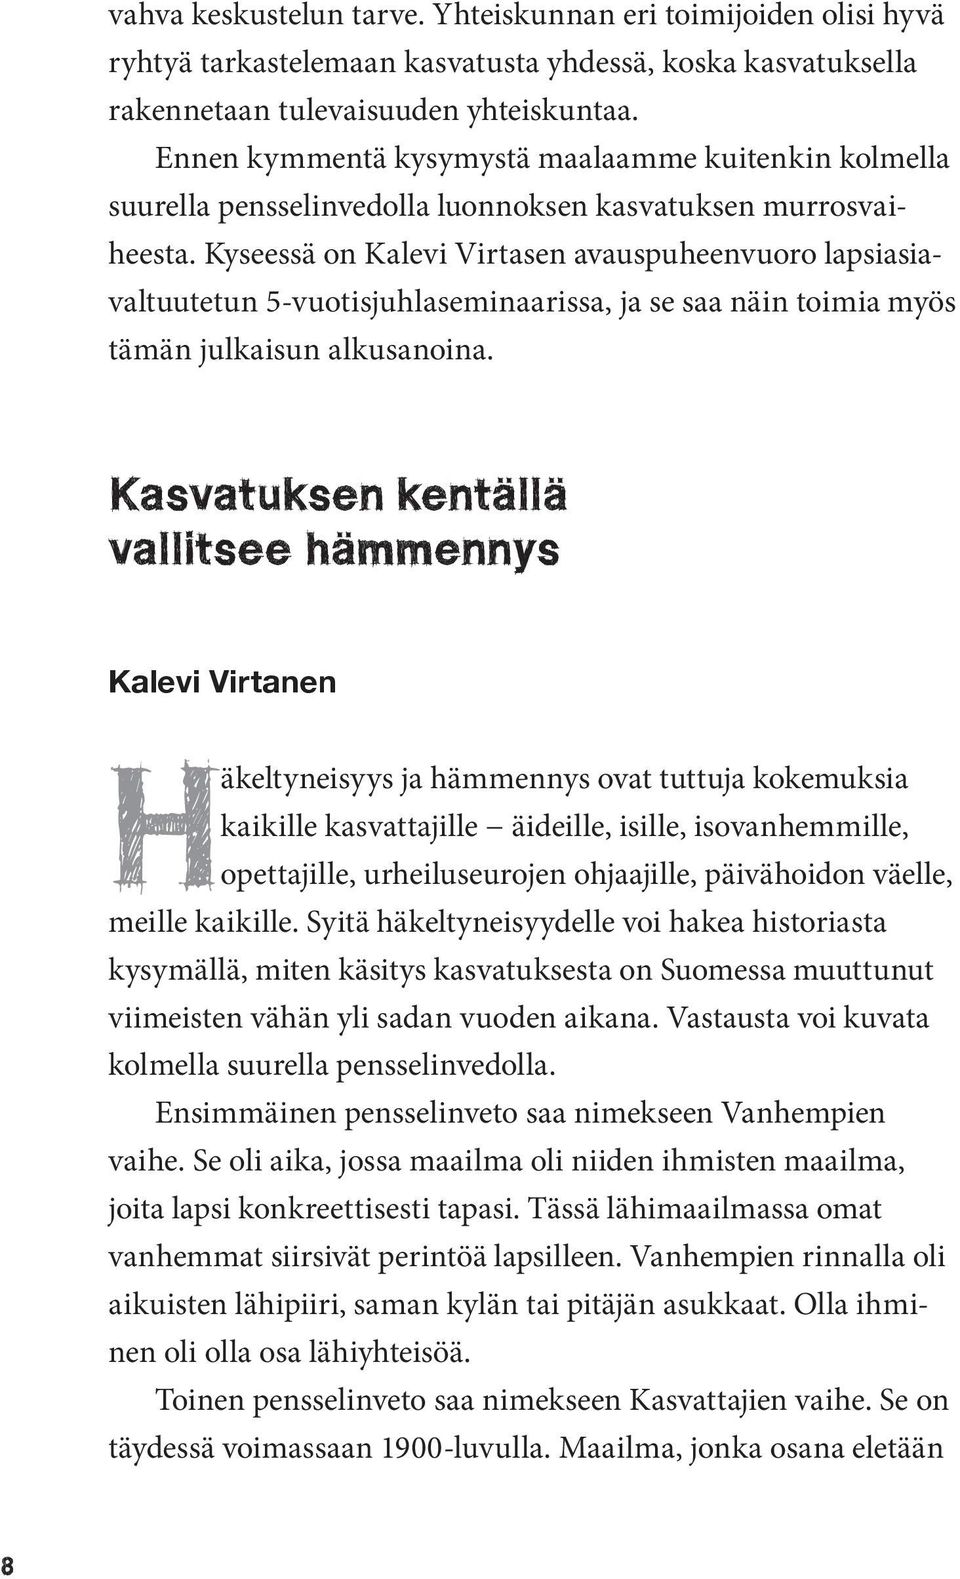 Kyseessä on Kalevi Virtasen avauspuheenvuoro lapsiasiavaltuutetun 5-vuotisjuhlaseminaarissa, ja se saa näin toimia myös tämän julkaisun alkusanoina.